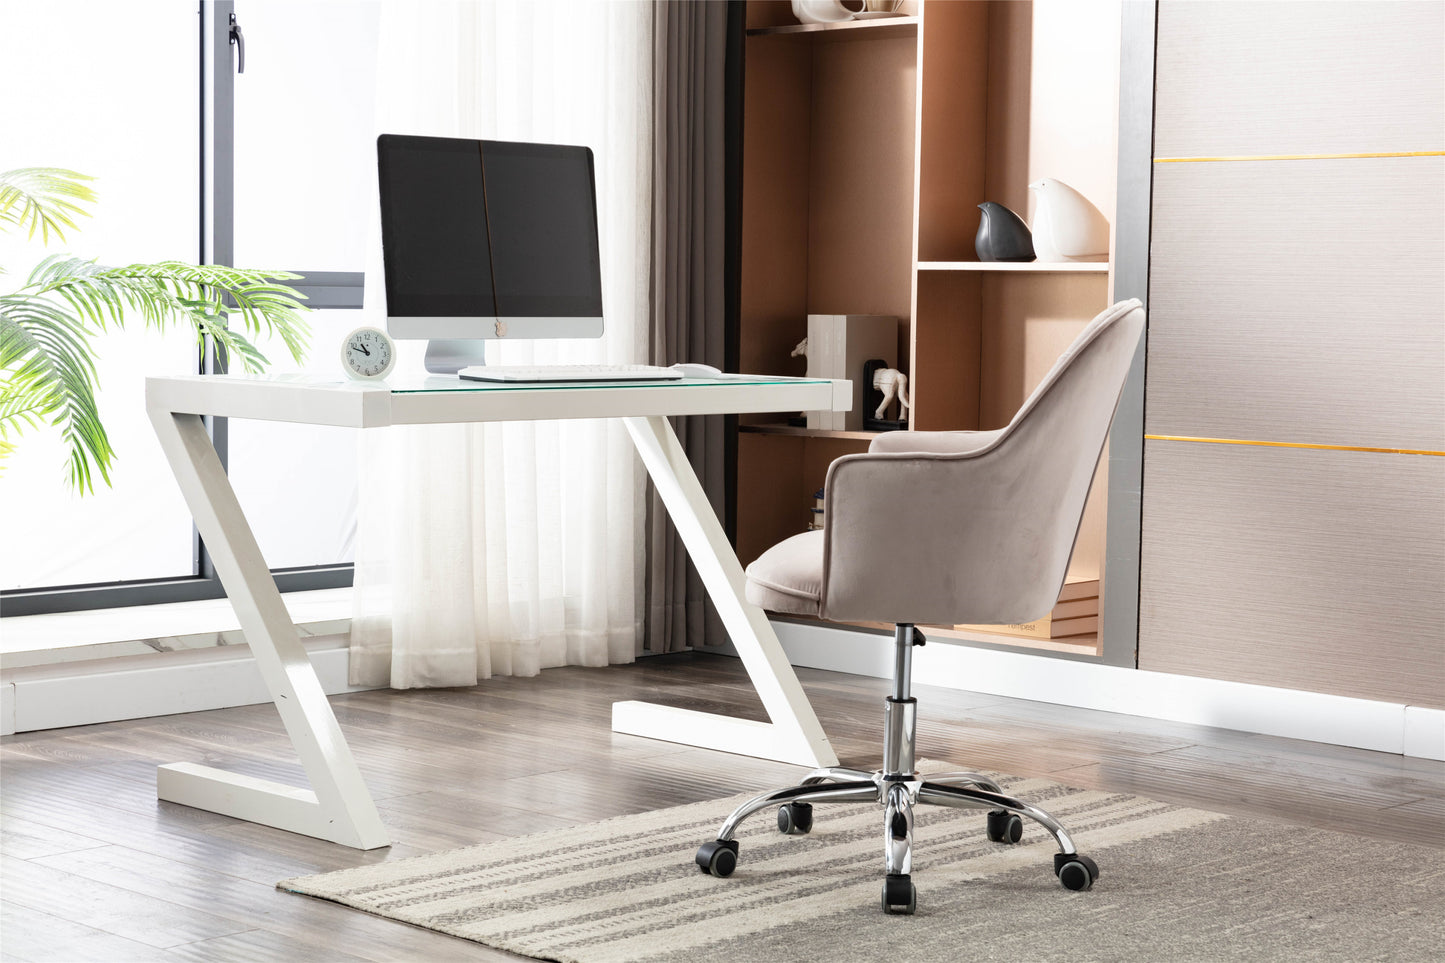 Velvet Swivel Shell Chair for Living Room, Modern Leisure Arm Chair, Office chair Grey